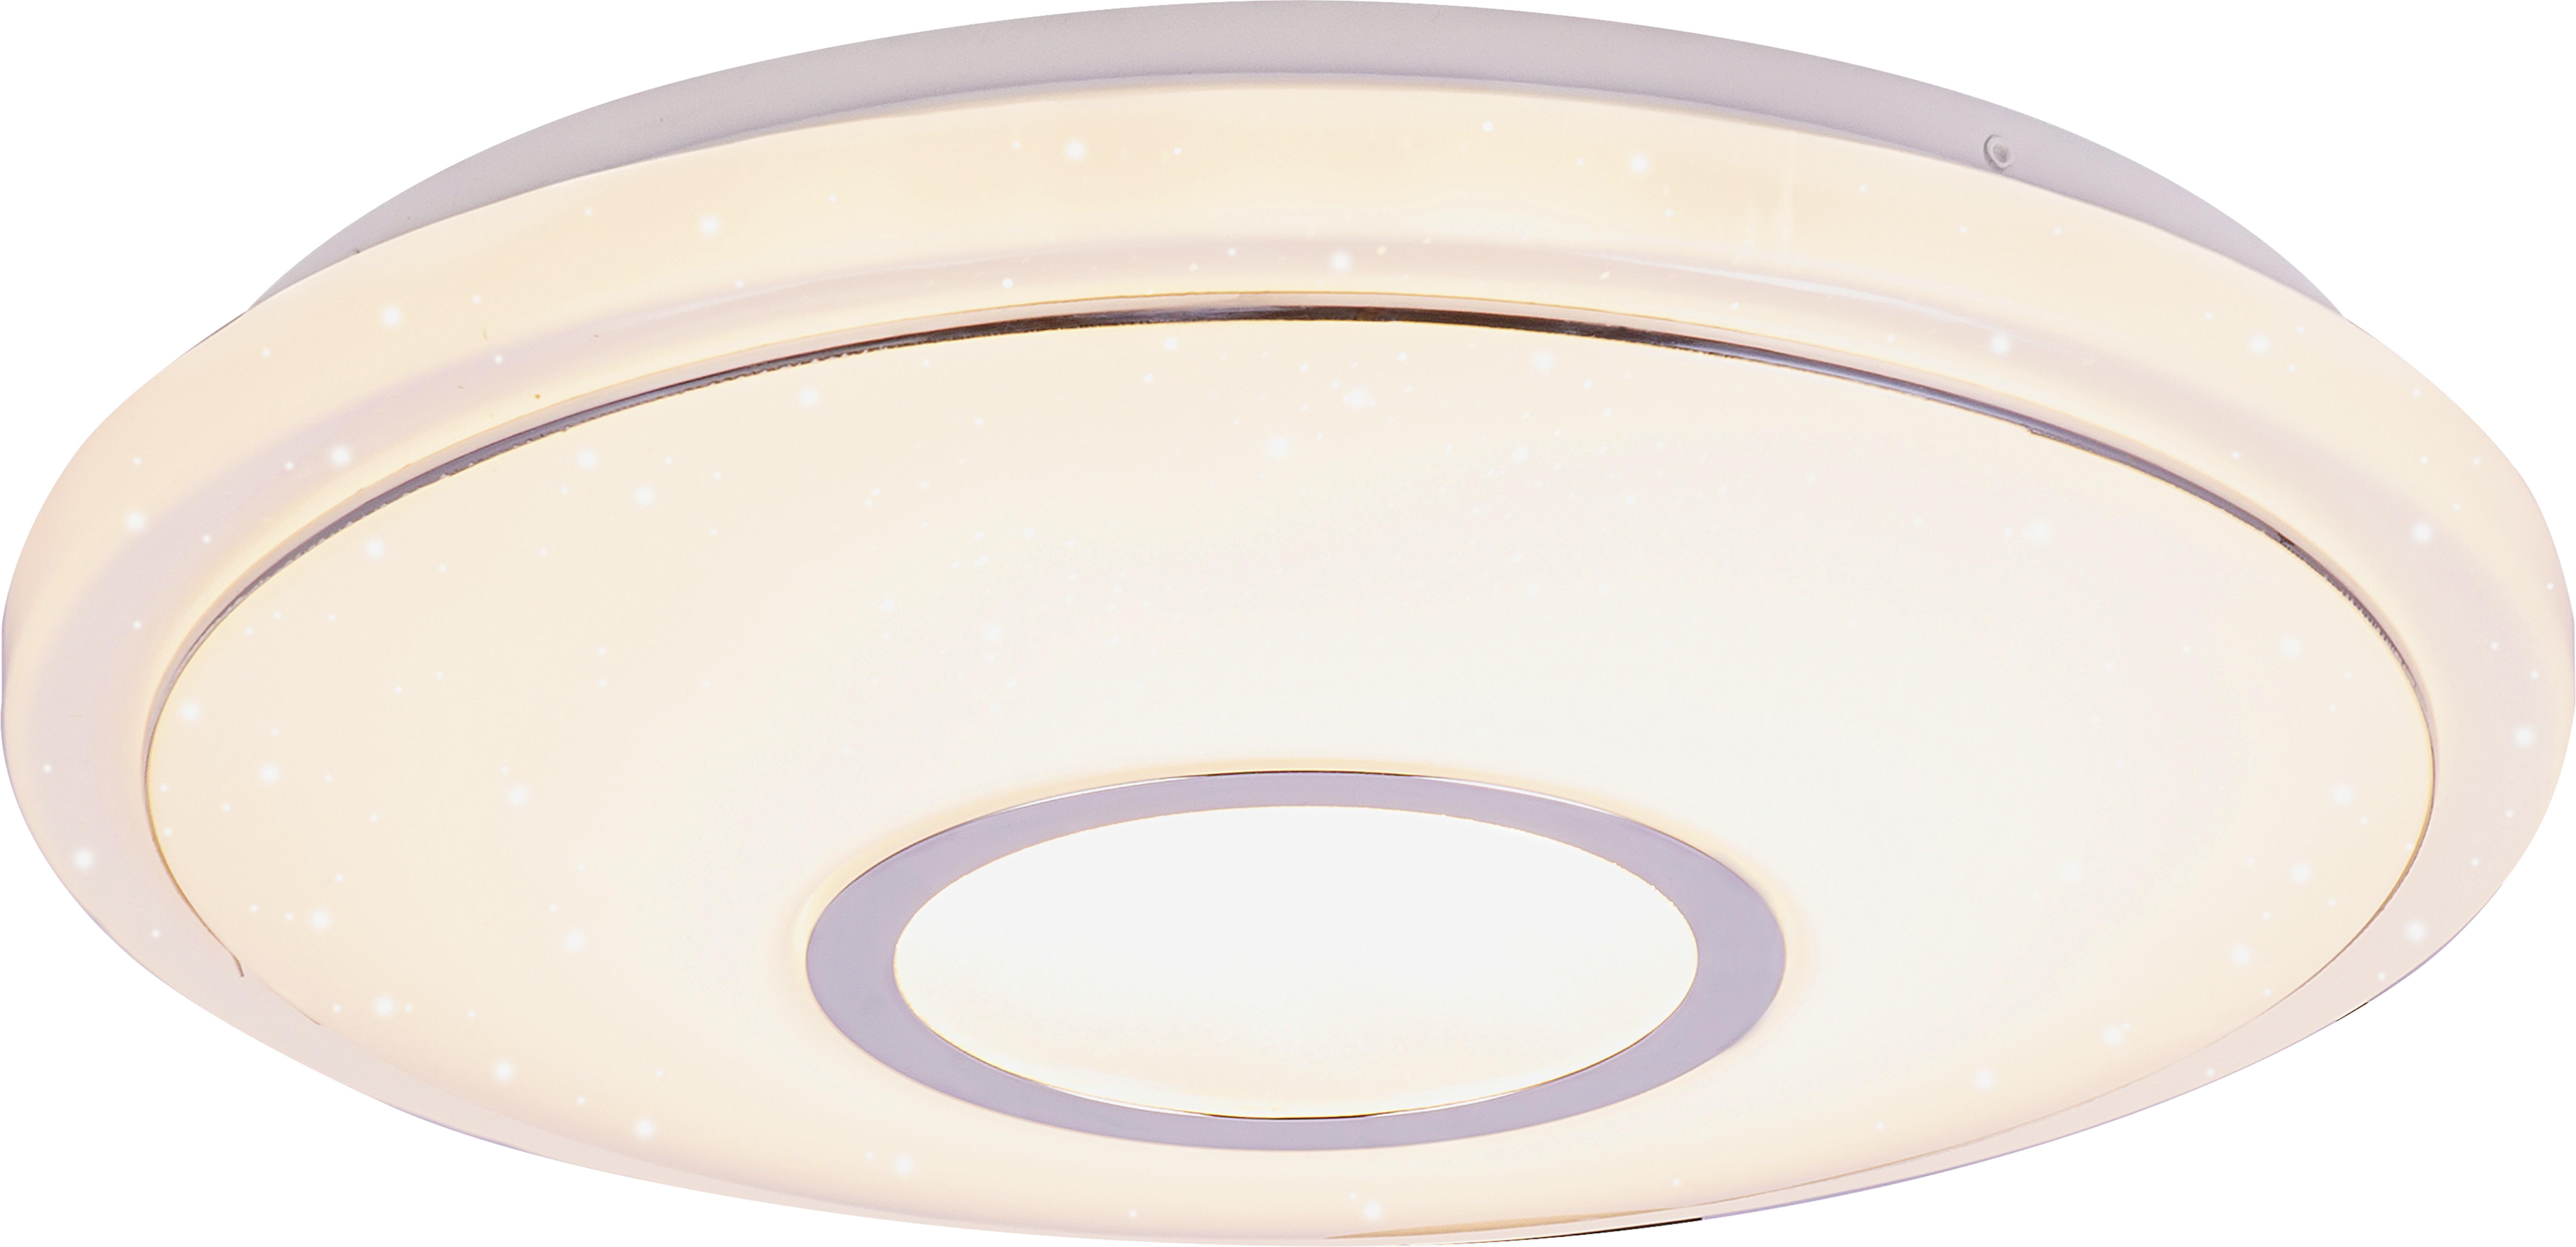 LED-Deckenleuchte Ross max. 16 Watt - Weiss, Konventionell, Kunststoff/Metall (40/9cm) - Premium Living